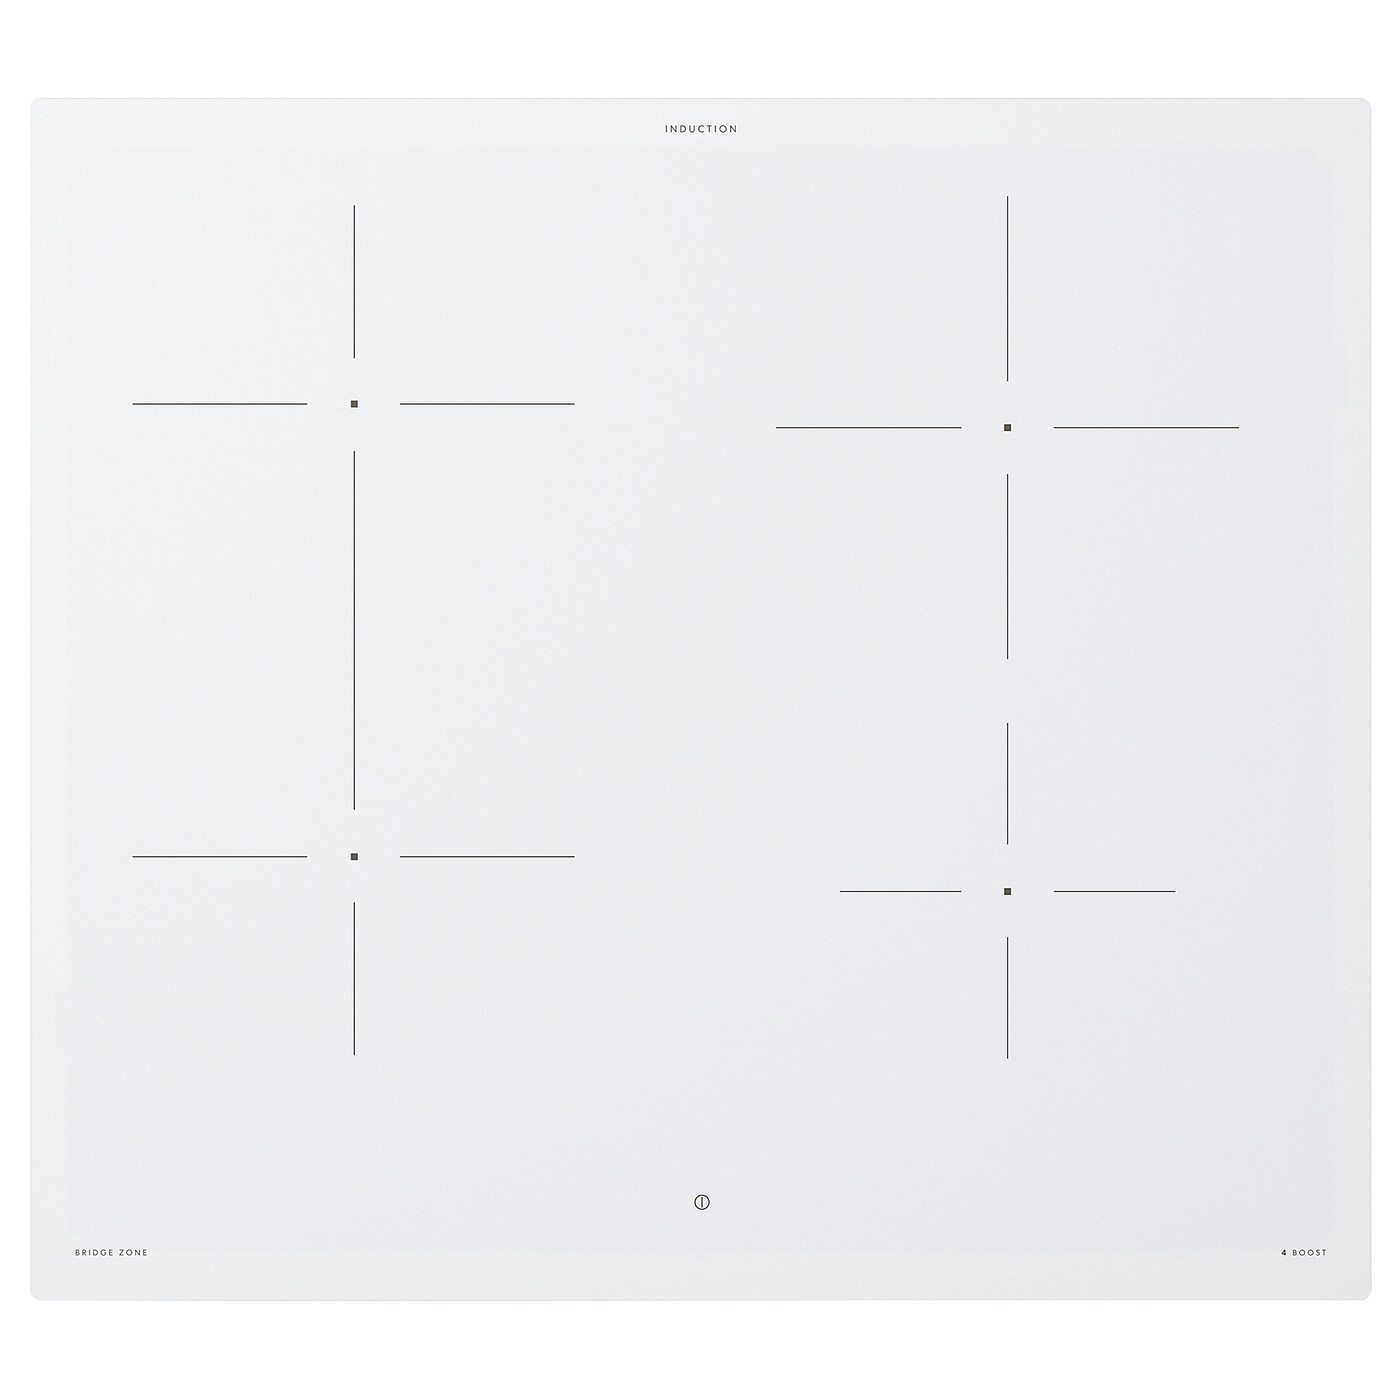 ИКЕА BEJUBLAD, Индукционная плита, 004.672.96, белый ИКЕА 500 белый, 58 см